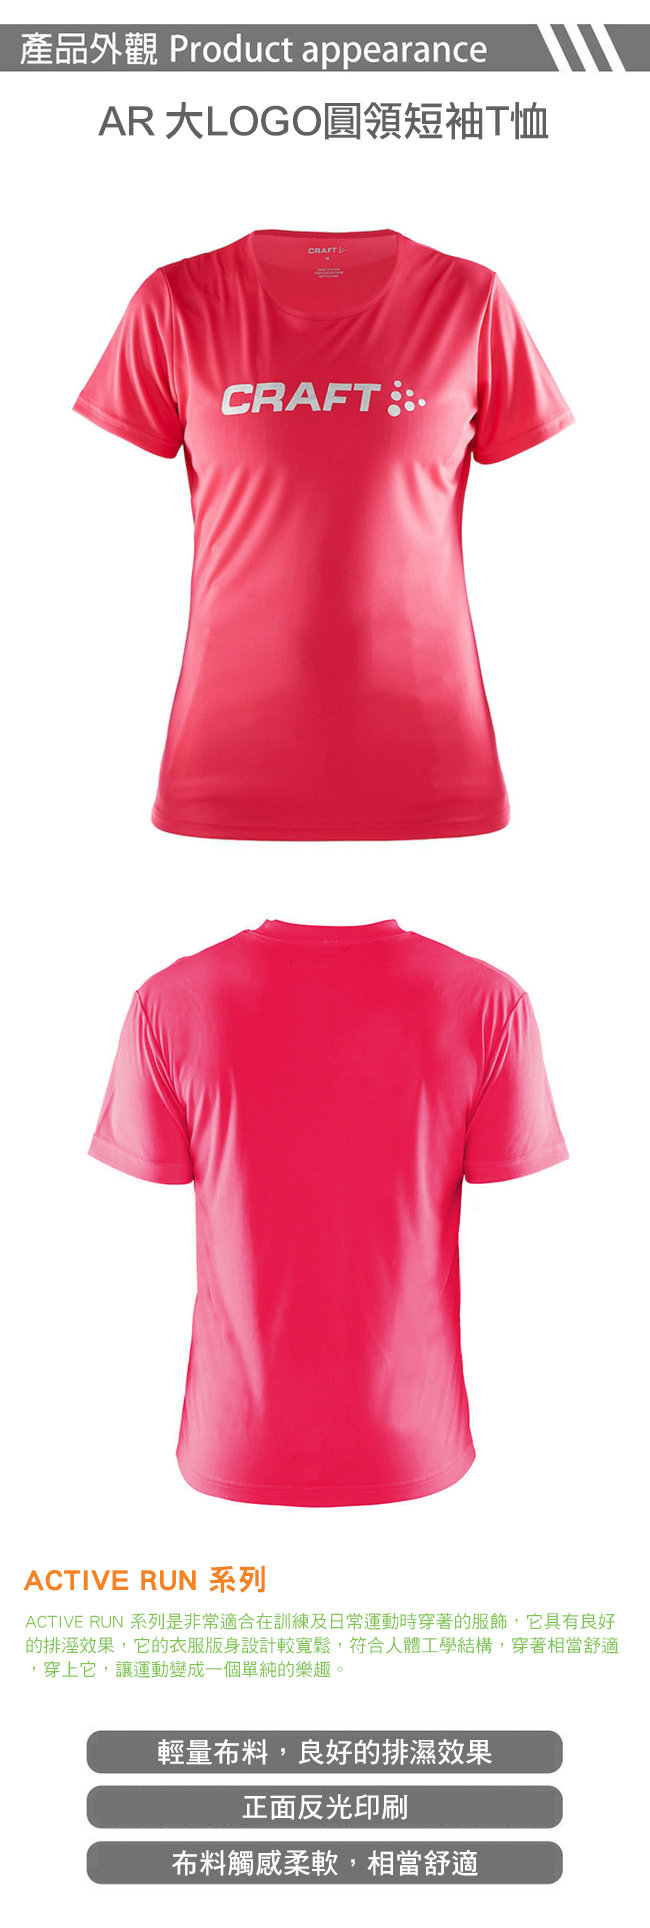 【瑞典CRAFT】女 AR大LOGO圓領短袖T恤『櫻桃紅』192482